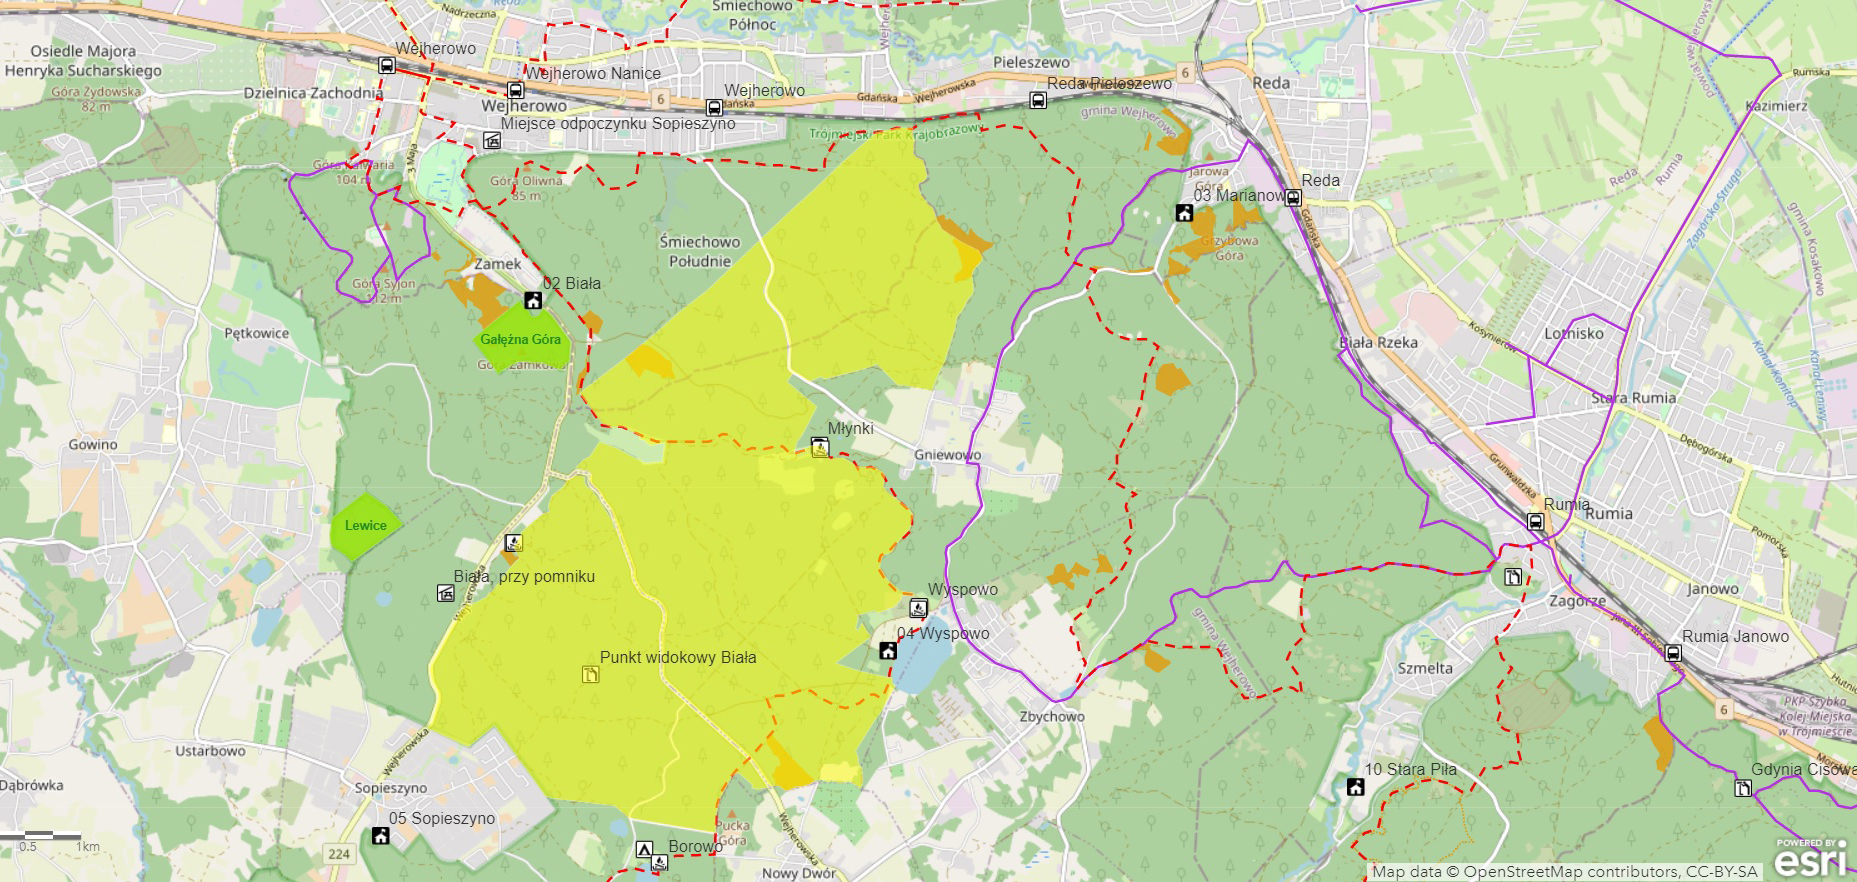 Mapa bushcraftowego obszaru pilotażowego w Nadleśnictwie Gdańsk. Źródło: Lasy Państwowe